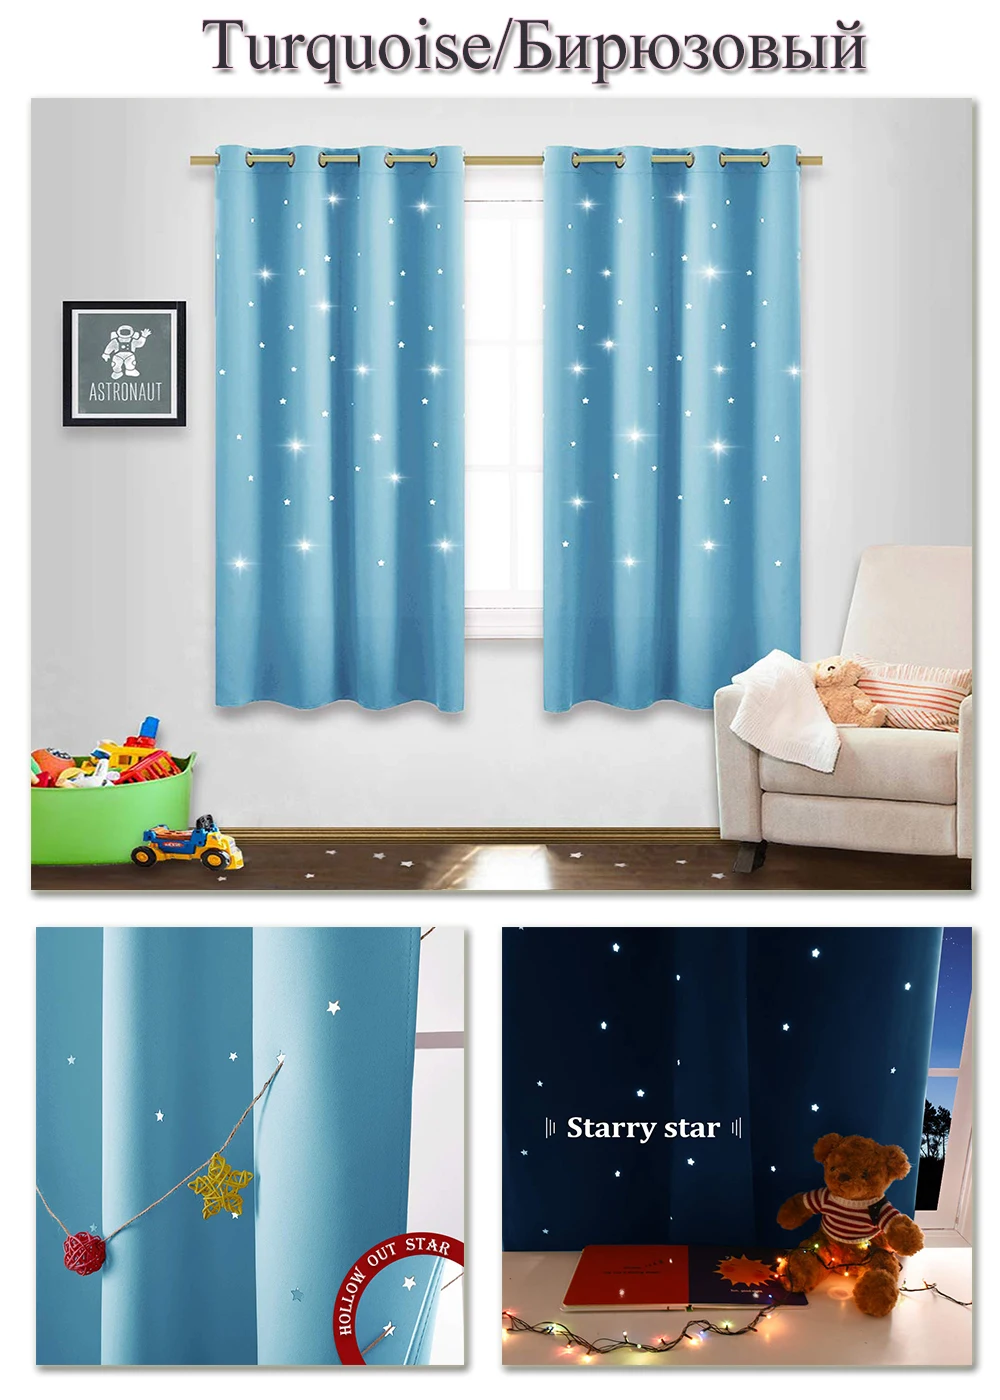 NICETOWN Детские Звезды Луна звездное небо плотные детские окна драпировка для детской комнаты с вырубной звезды Naptime Essential